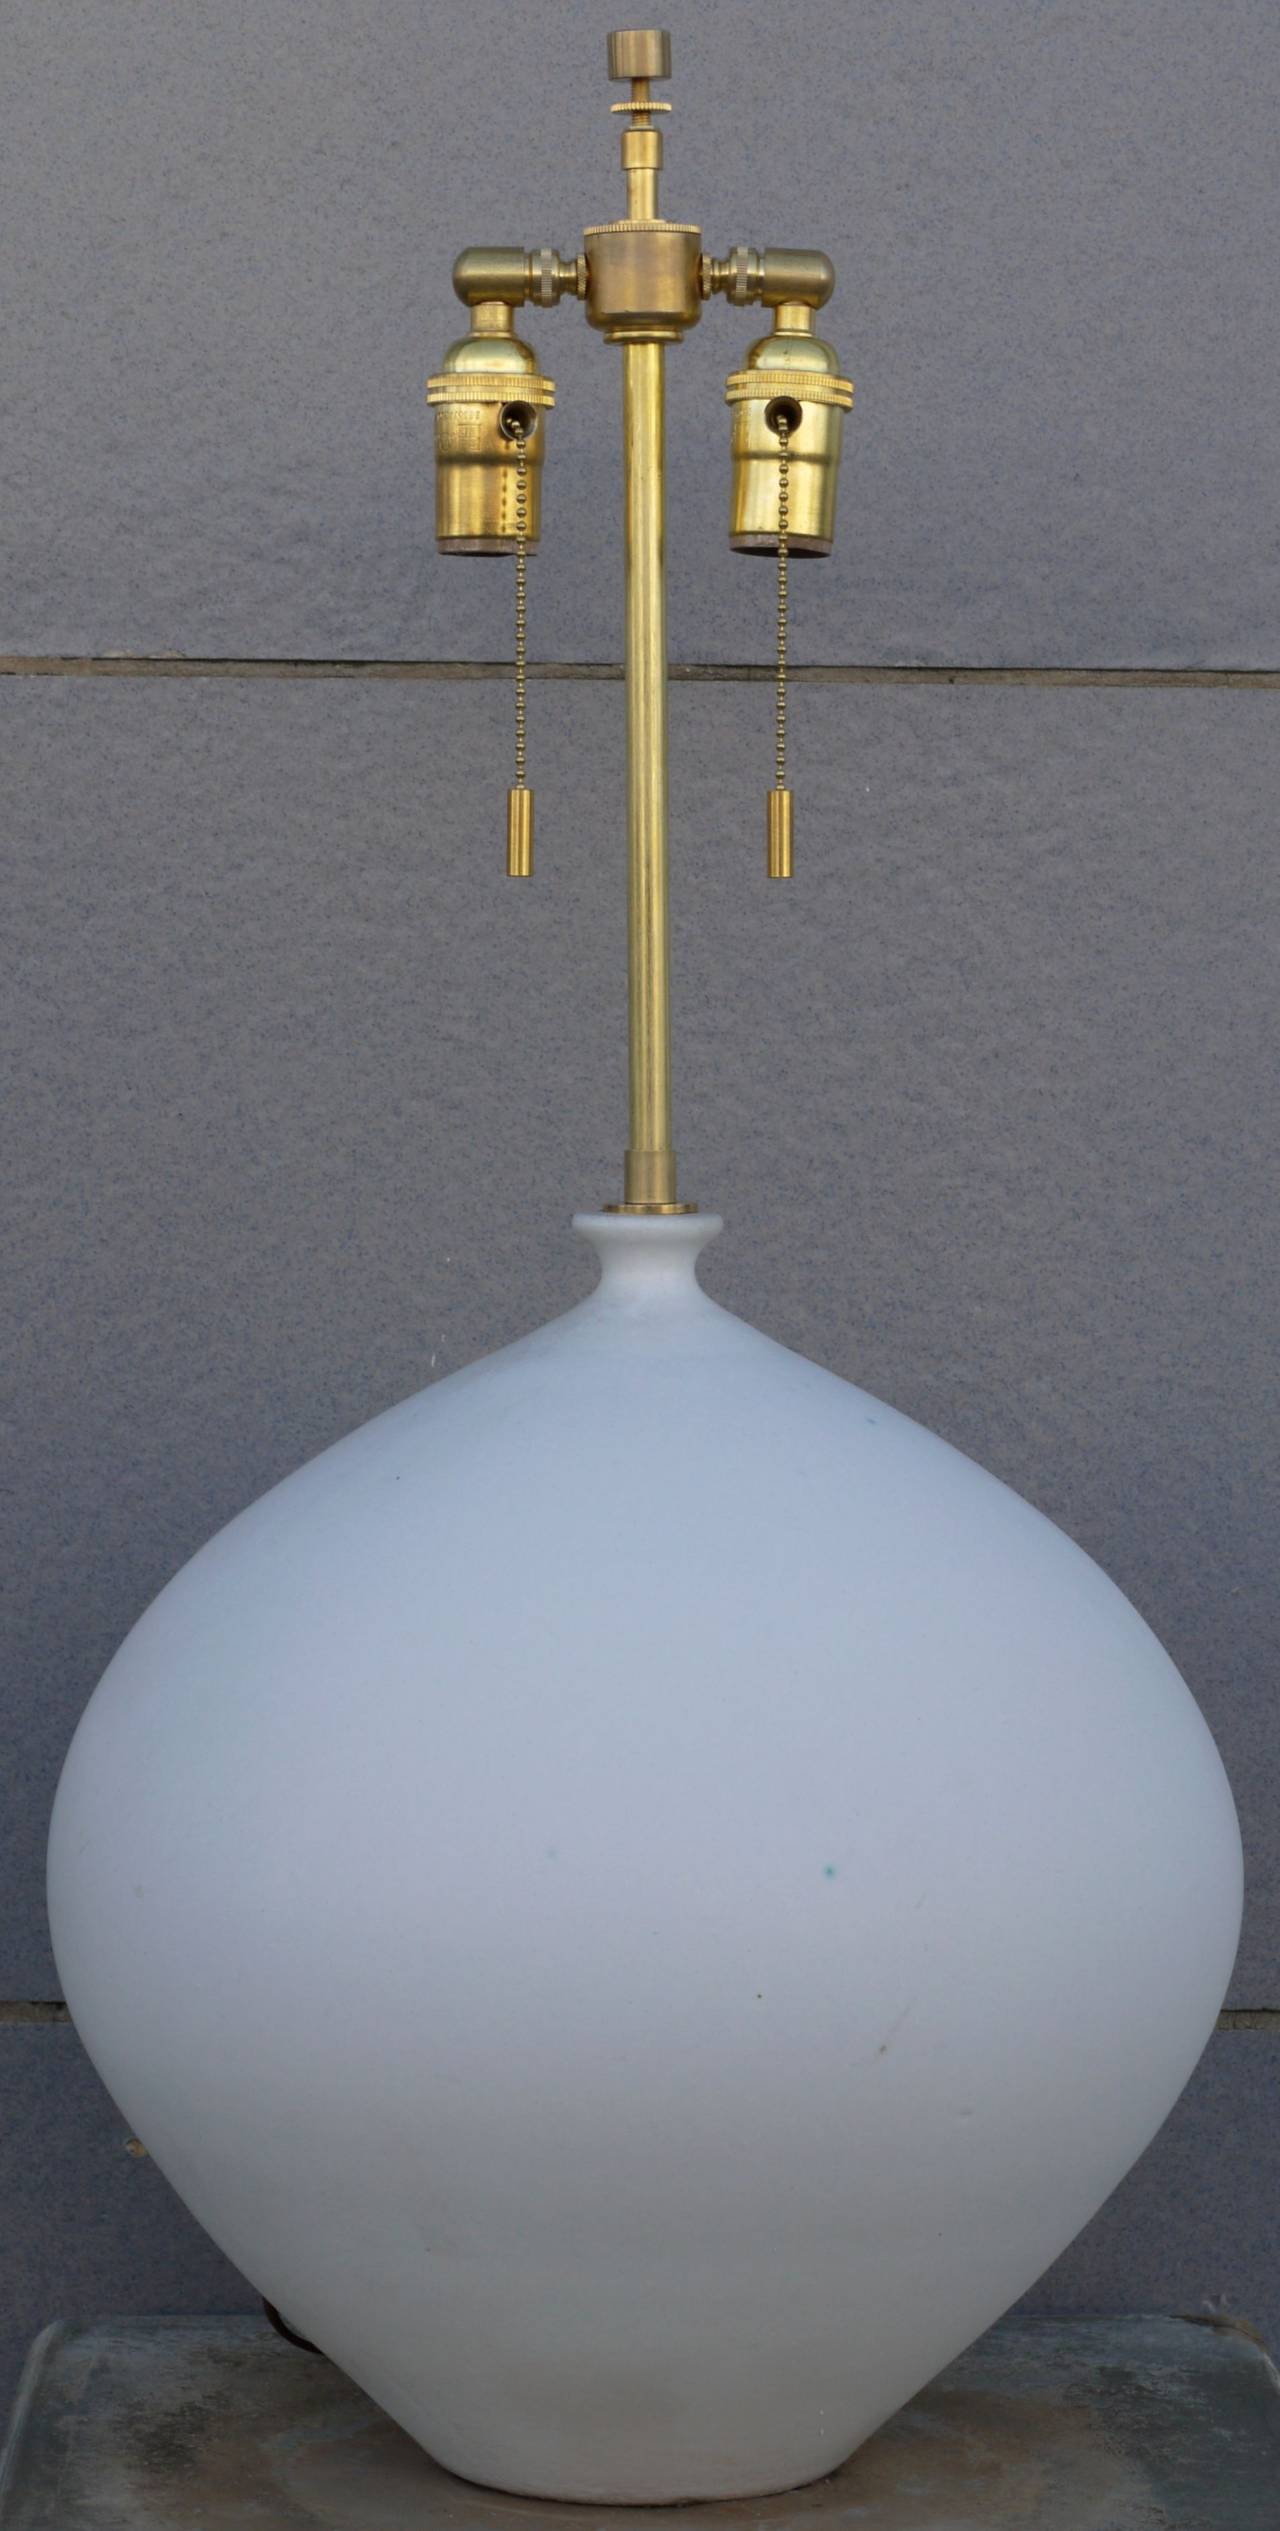 Magnifique lampe en magnésium émaillé blanc de Design Technics. Ce modèle est rare, car cette forme a généralement une base sur pied. Il est signé avec une marque imprimée au dos au-dessus de la prise. Glace blanche avec une tache bleue